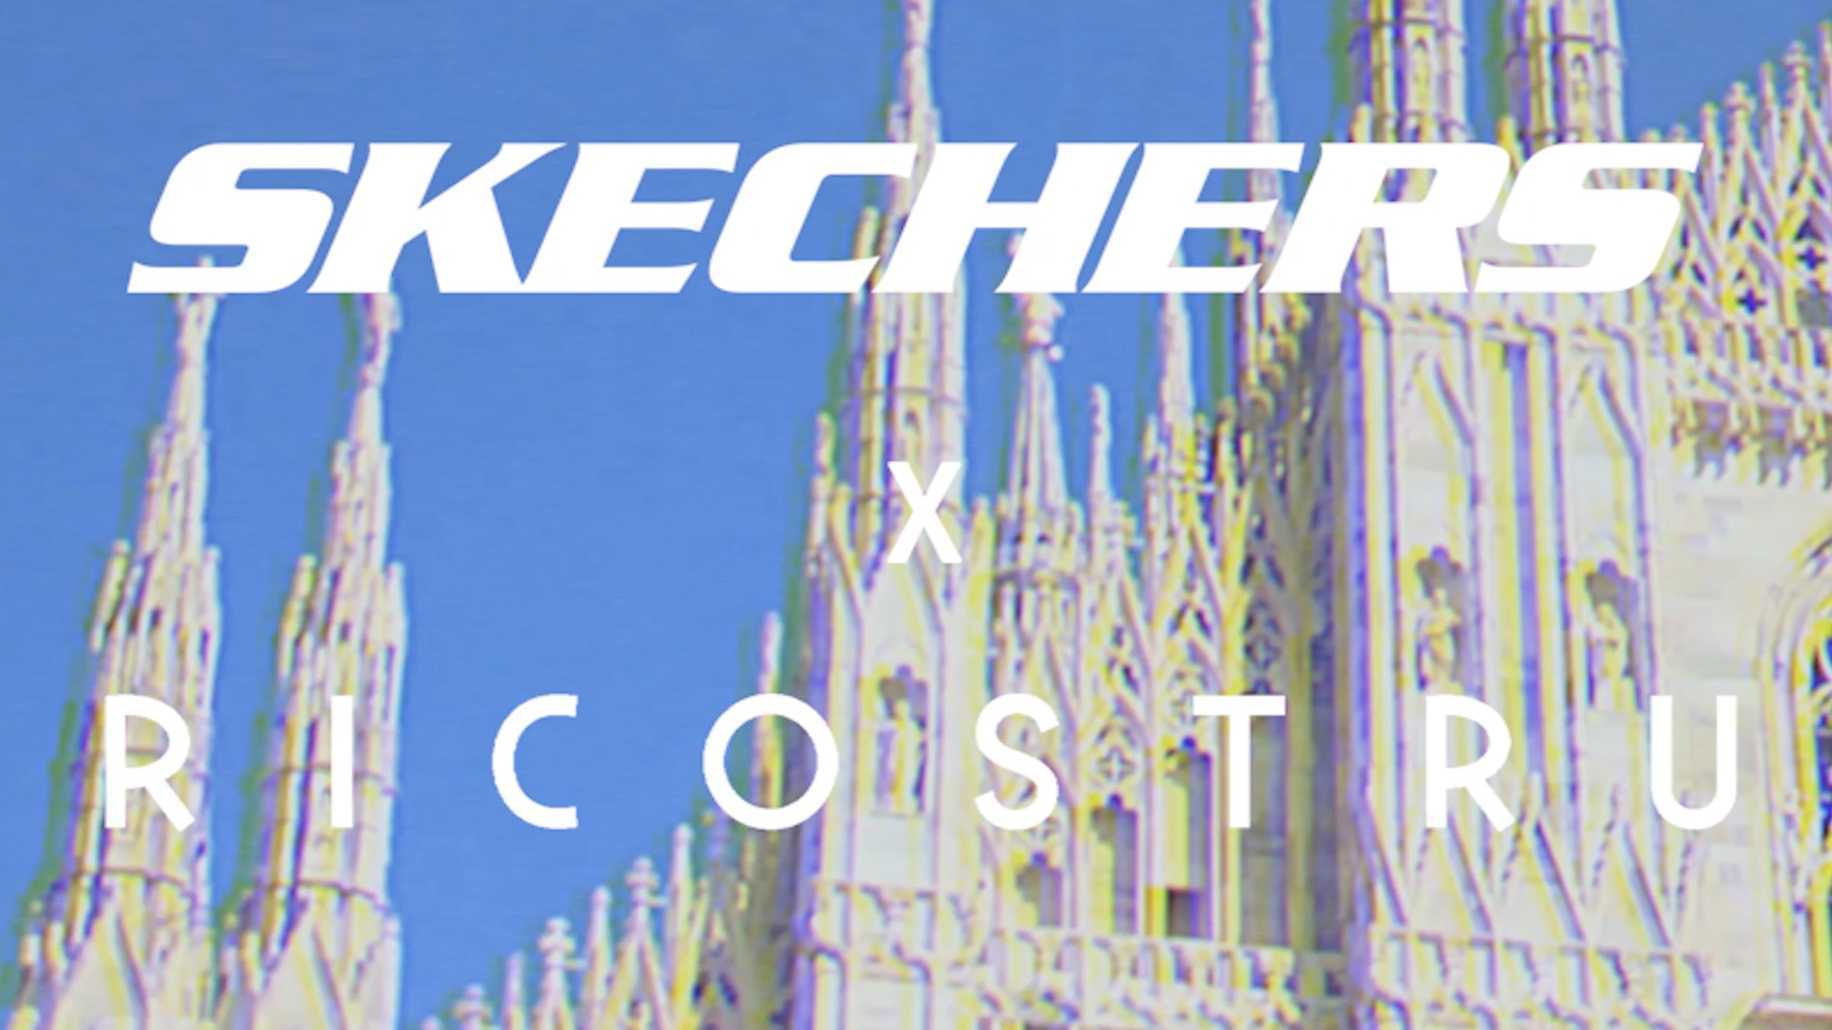 2019斯凯奇 x Ricostru米兰品牌发布会城市主题